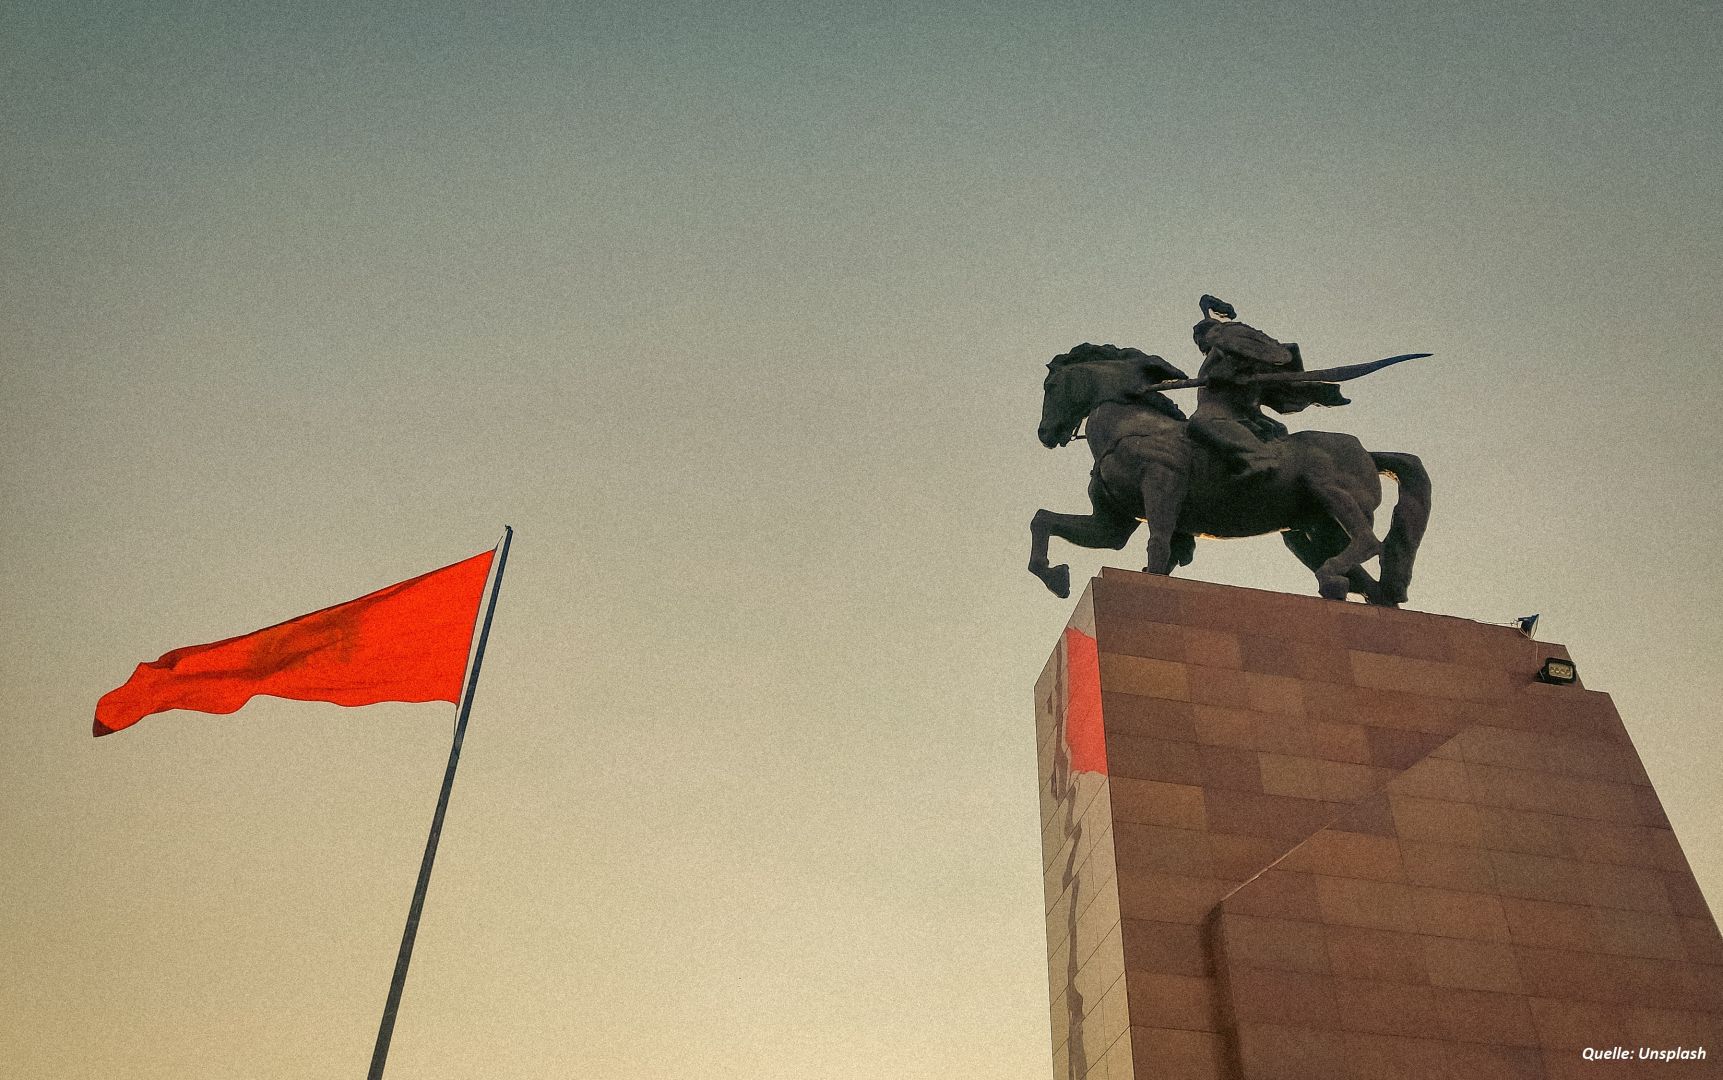 Der Profilausschuss des kirgisischen Parlaments hat einen Gesetzentwurf zur Änderung der Flagge angenommen